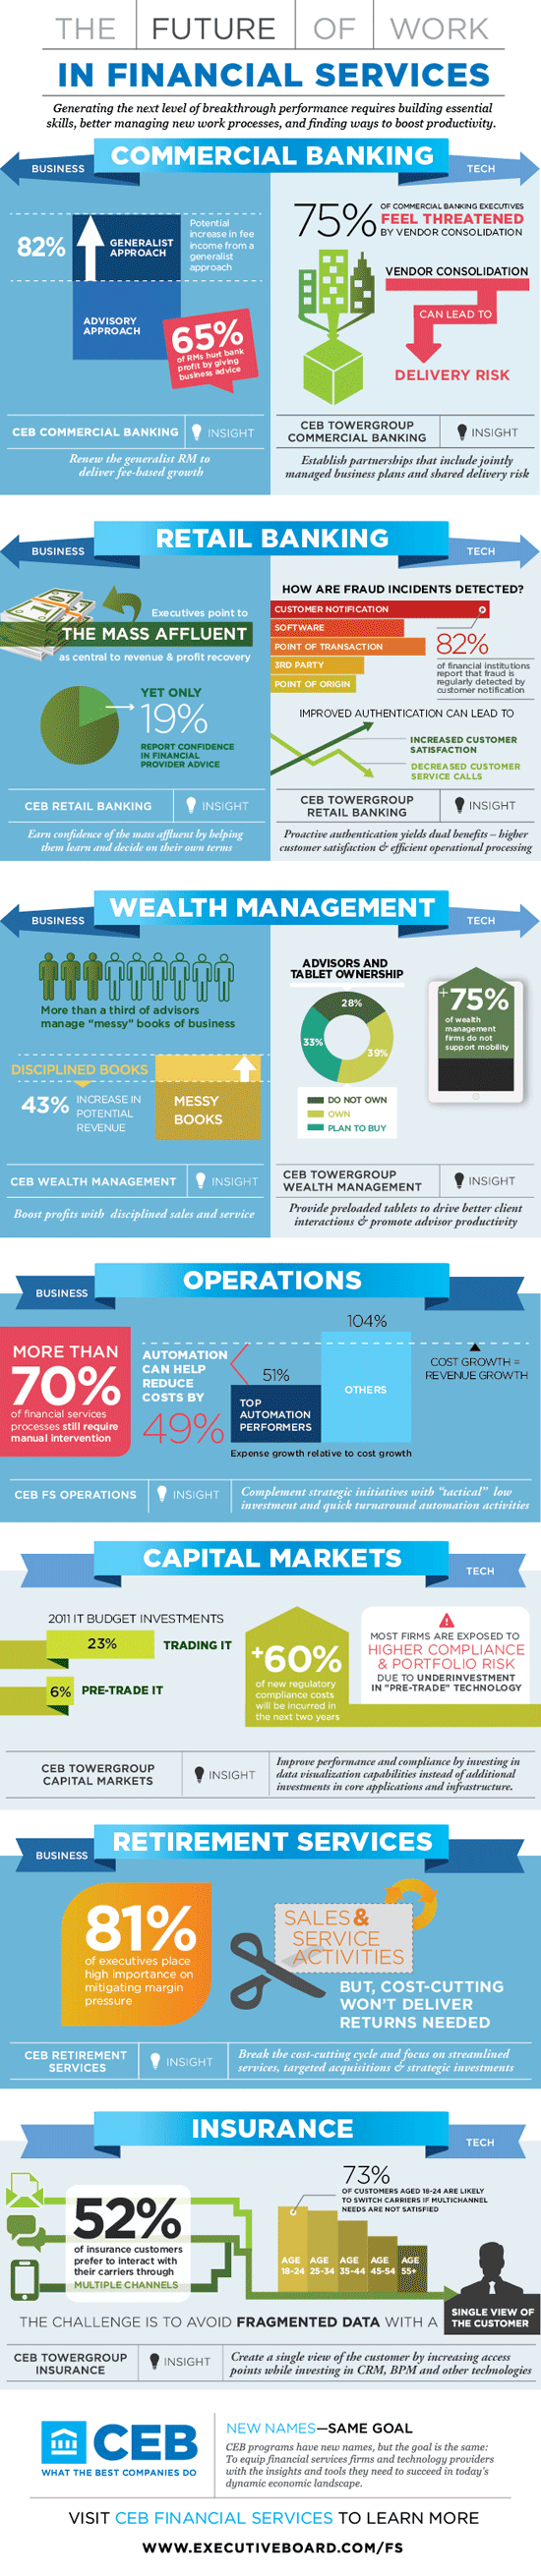 Infografik zur Zukunft der Arbeit in den verschiedenen Bereichen der Finanzdienstleistung